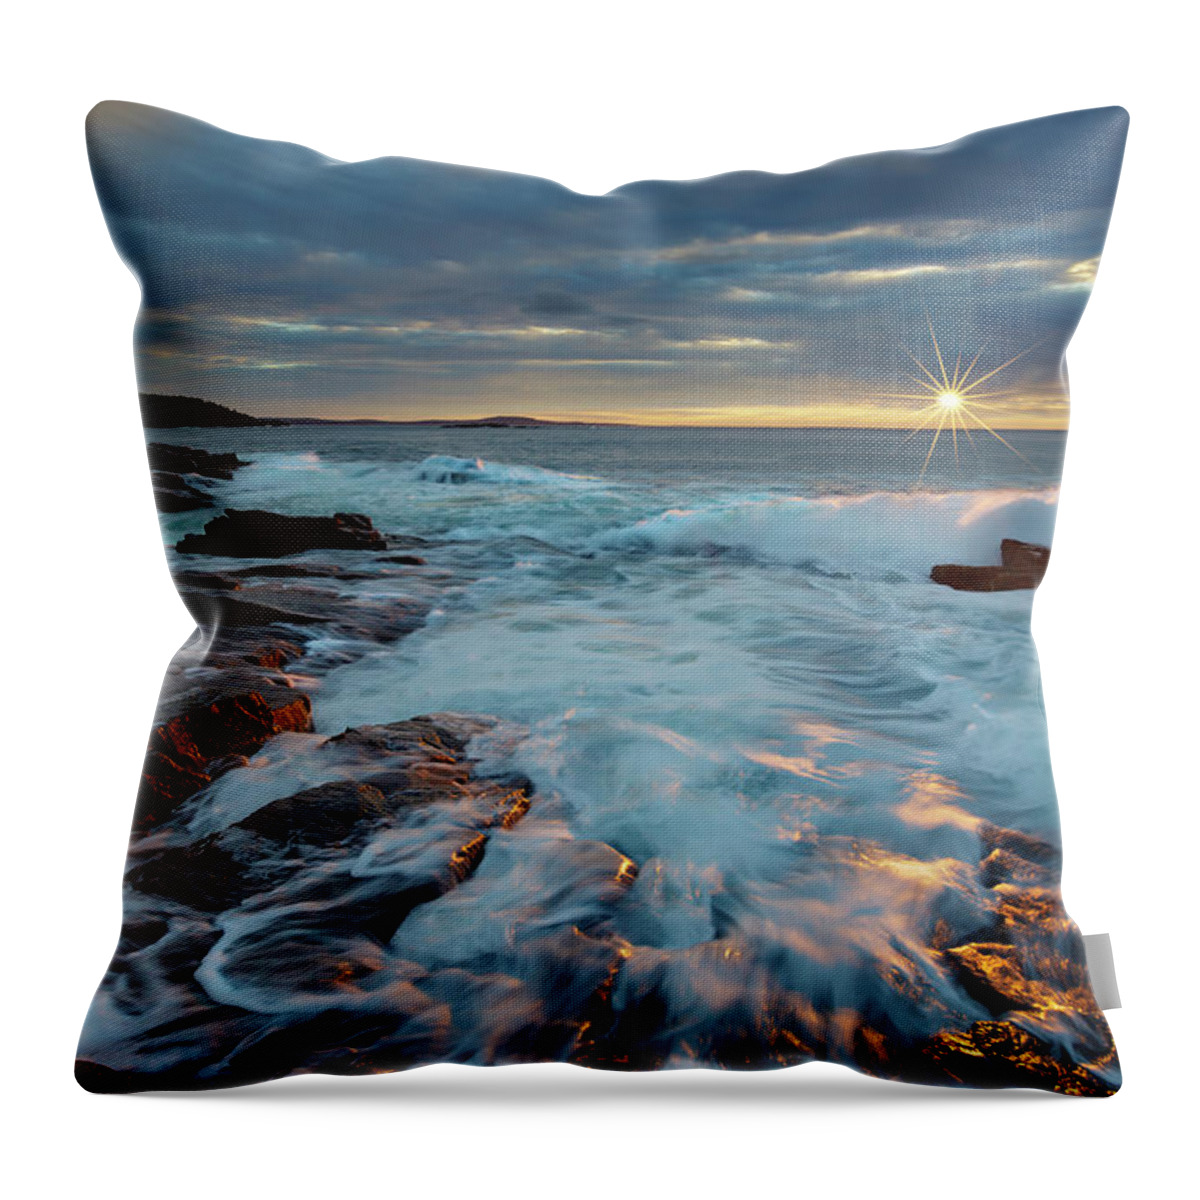 Thunderhole Throw Pillow featuring the photograph Thunder Hole Sunrise by Gary Johnson